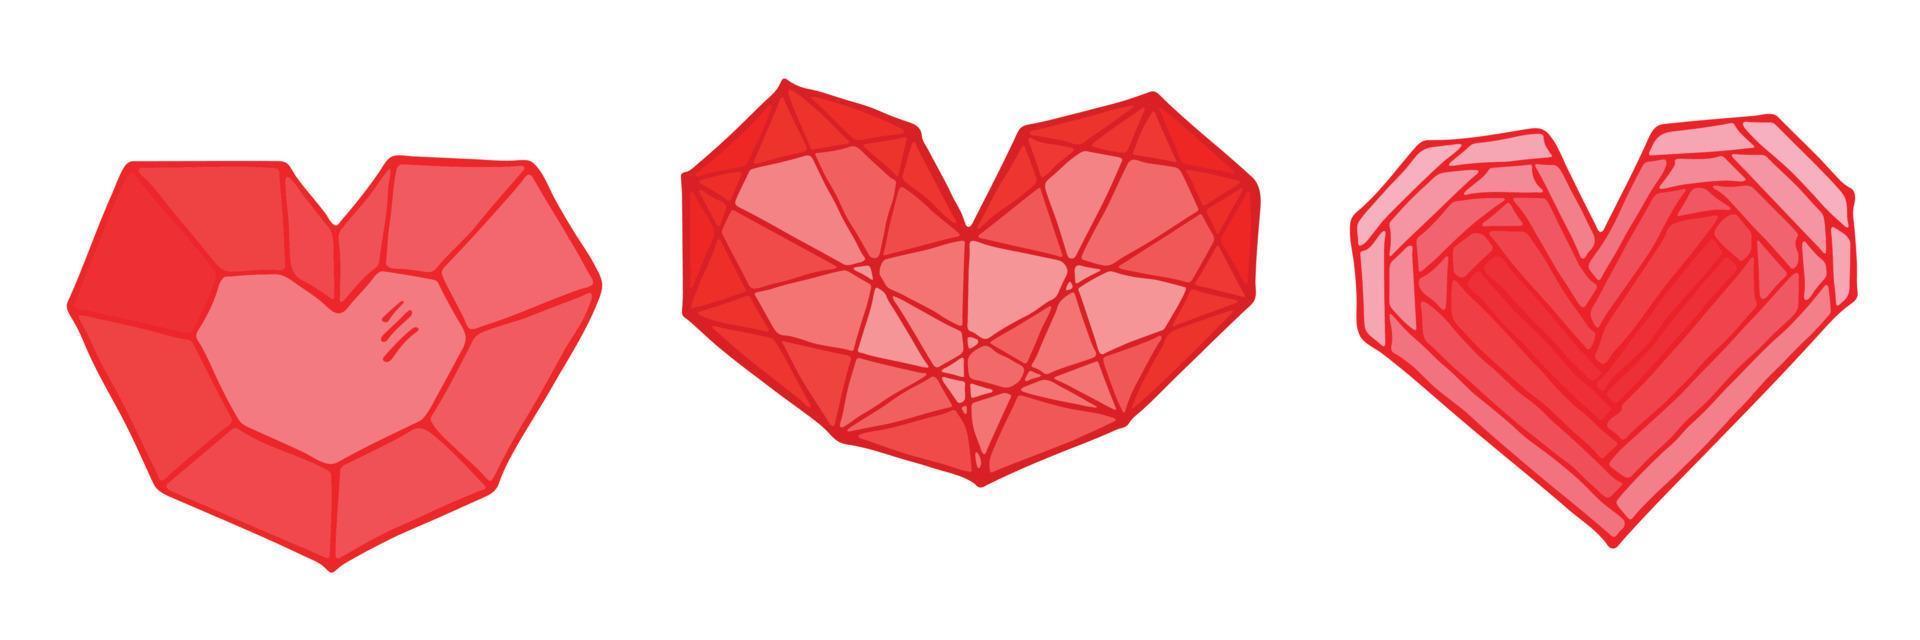 set di semplici illustrazioni a cuore disegnato a mano. carino doodle del cuore di san valentino. vettore